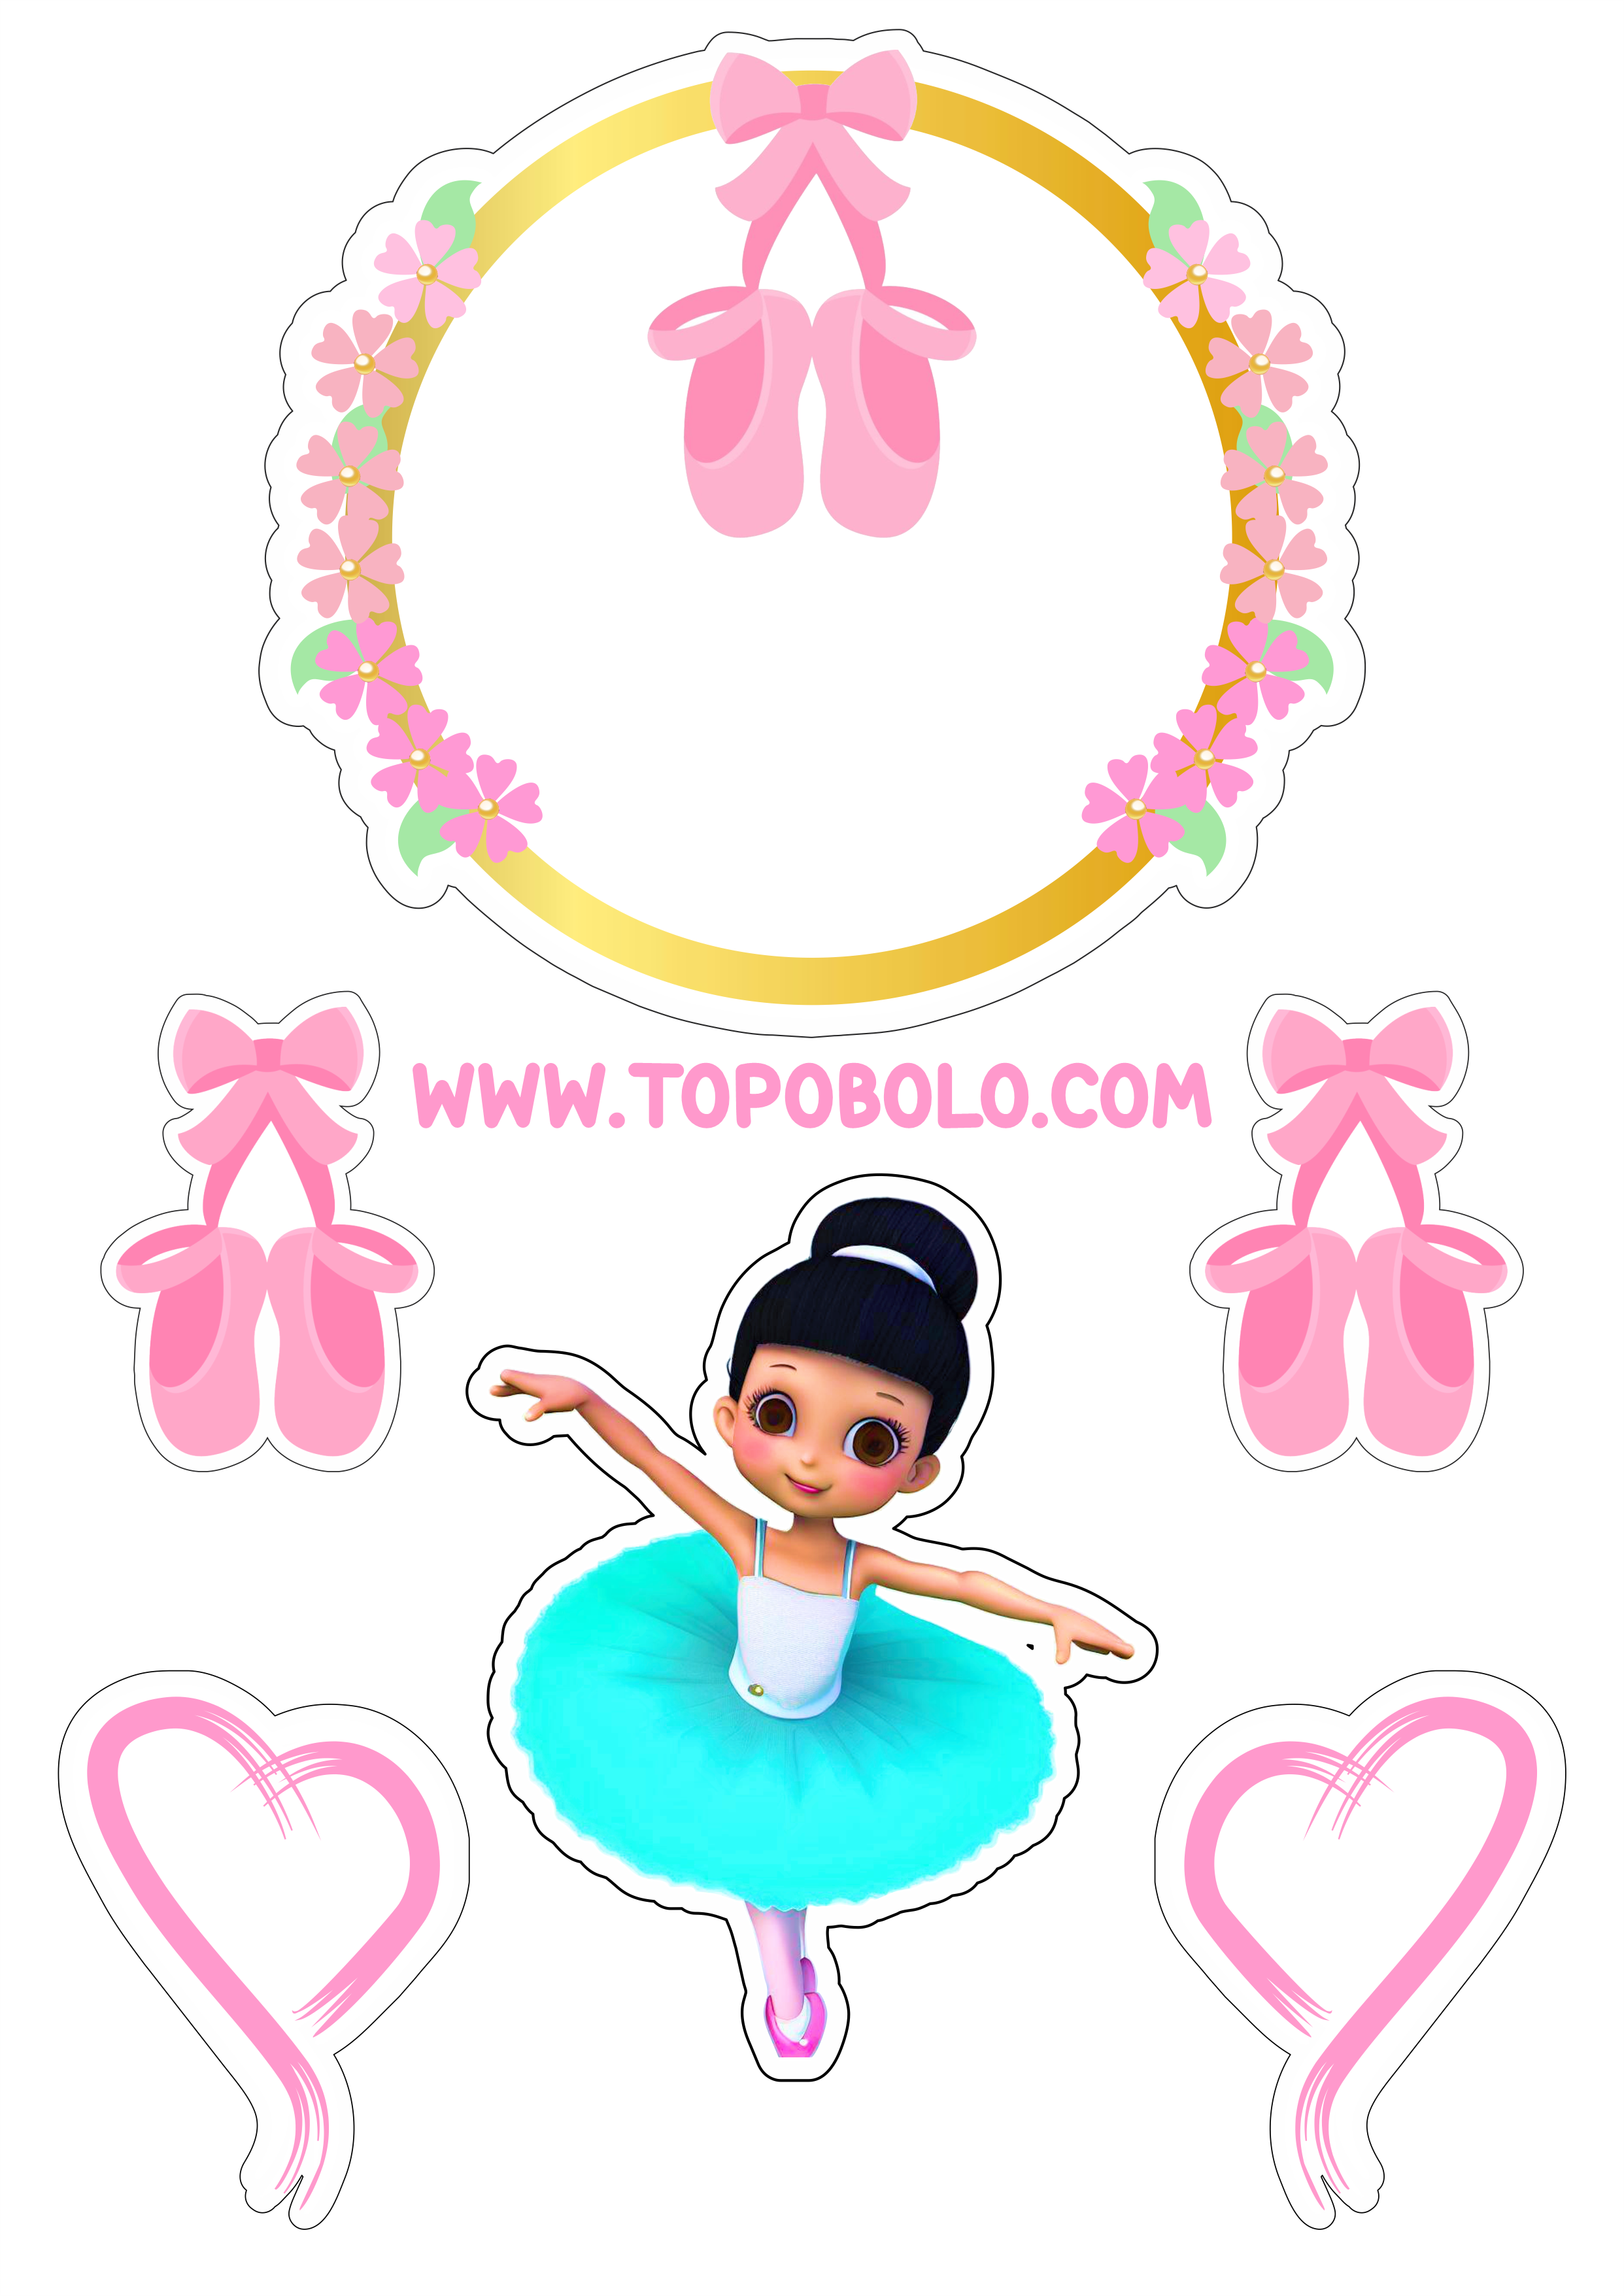 Bailarina topo de bolo aniversário menina decoração rosa com corações boneca fofinha bolo personalizado png